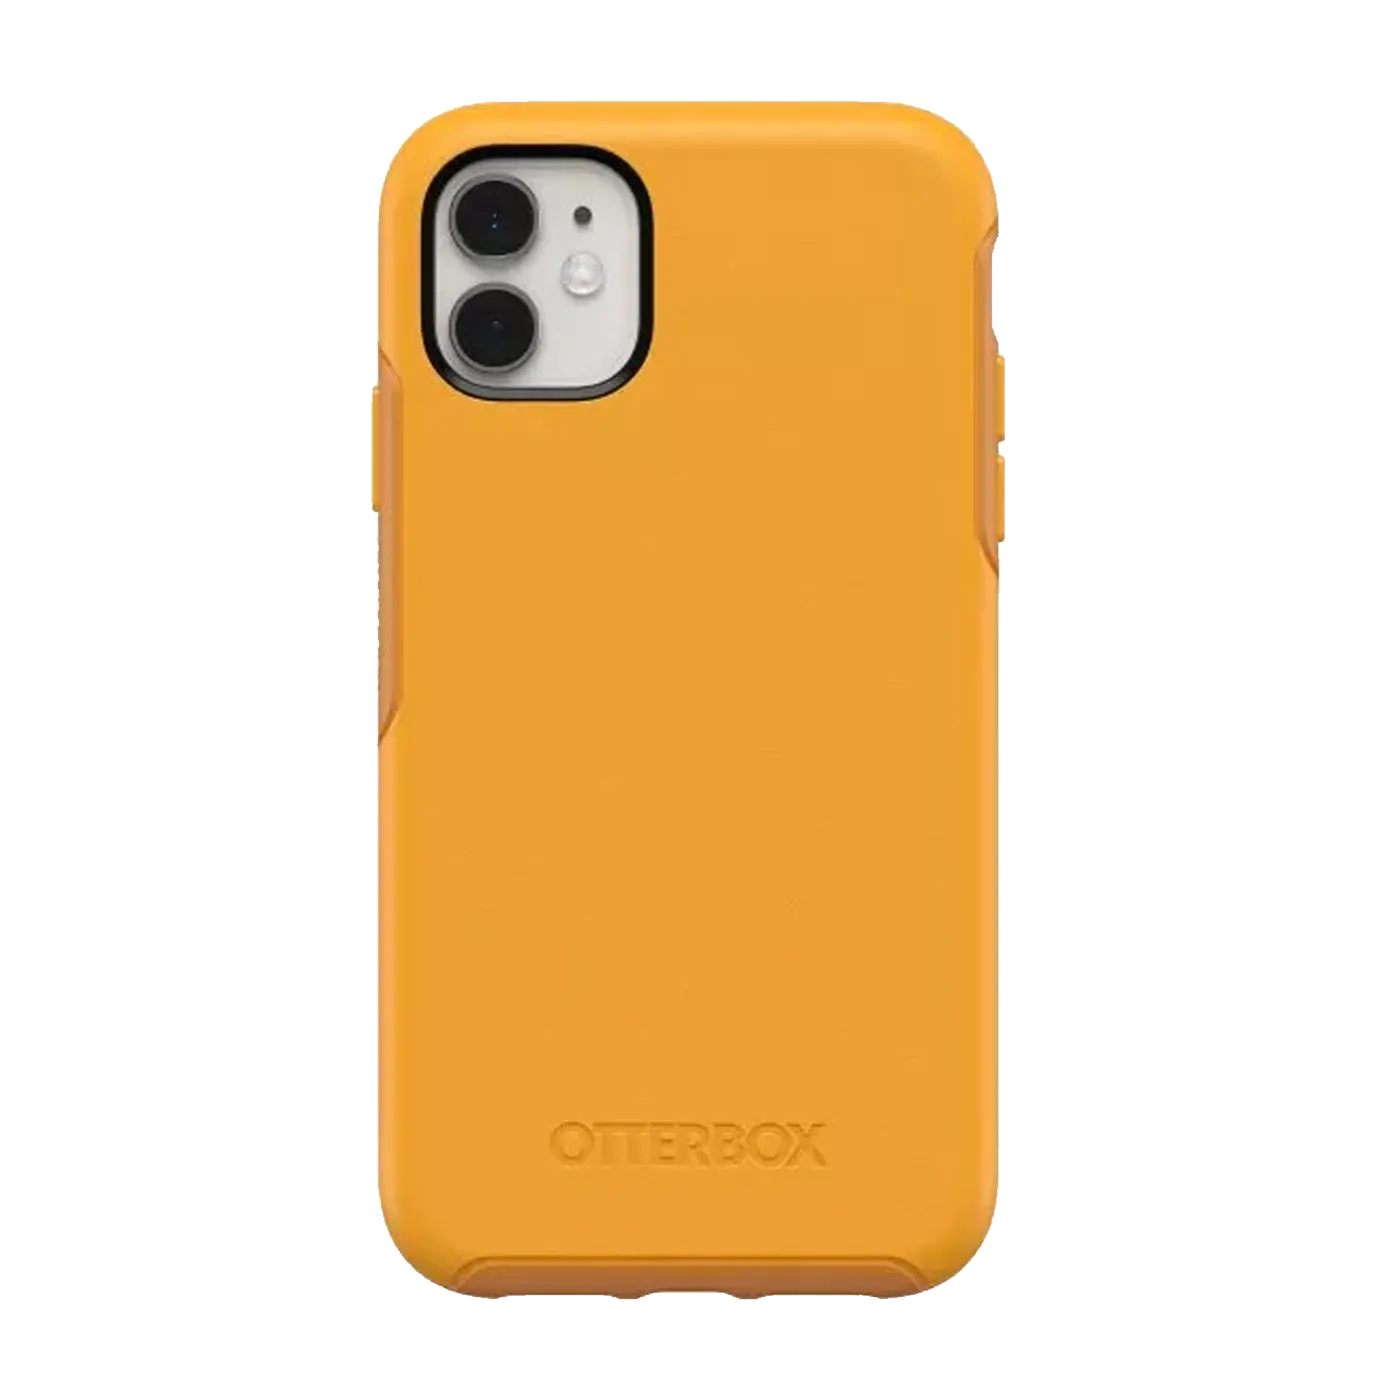 iphone 11 yellow symmetry case